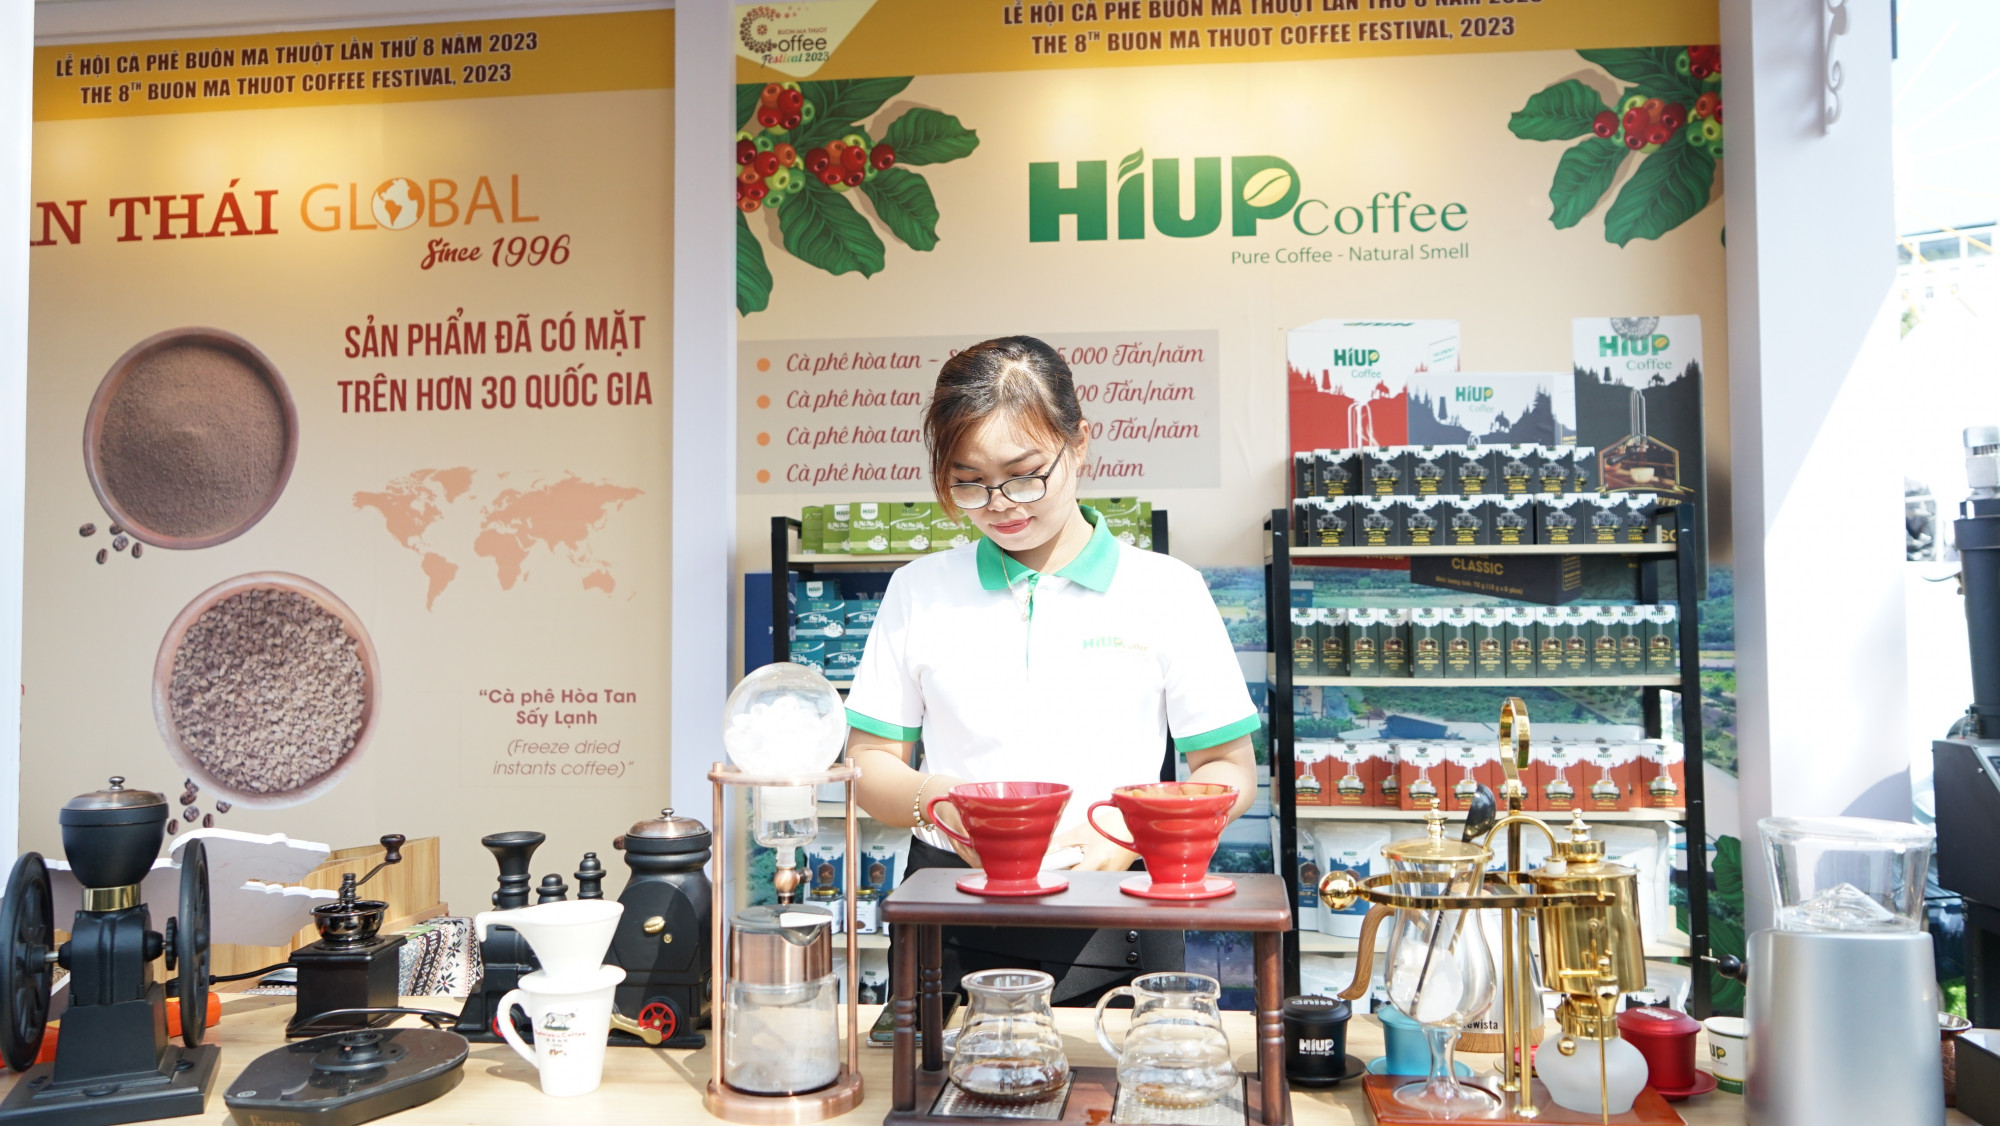 có 8 doanh nghiệp nước ngoài với 32 gian hàng trưng bày các sản phẩm cà phê của các nước trồng và xuất, nhập khẩu cà phê hàng đầu thế giới.